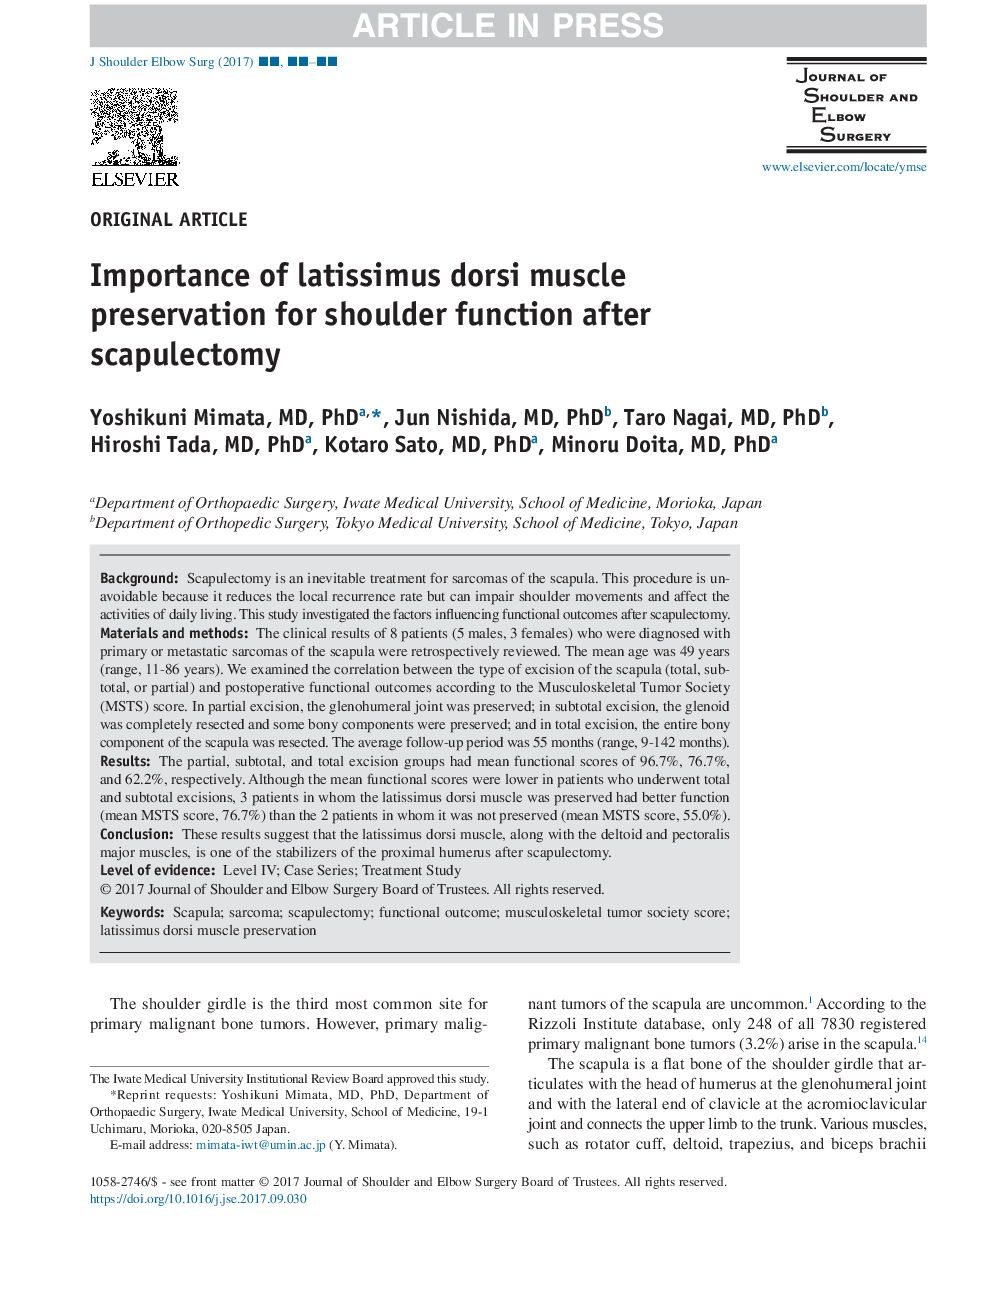 اهمیت حفظ عضله لاشیسیموس دورسی برای عملکرد شانه بعد از اسکاپولکتومی 